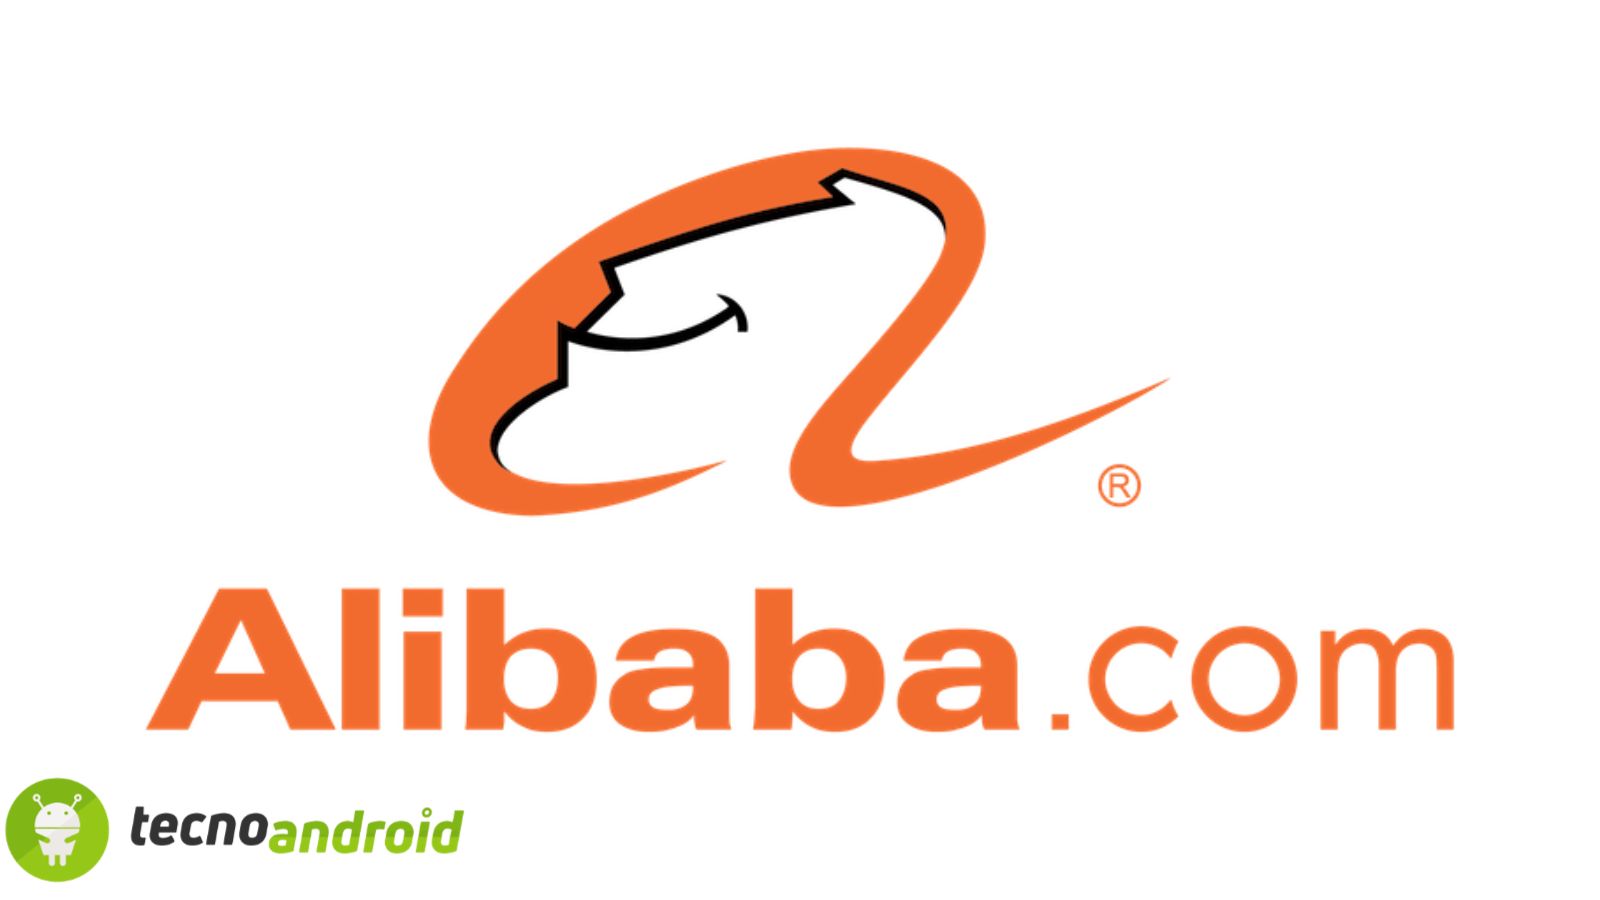 Attenzione: Alibaba sotto accusa per spionaggio 